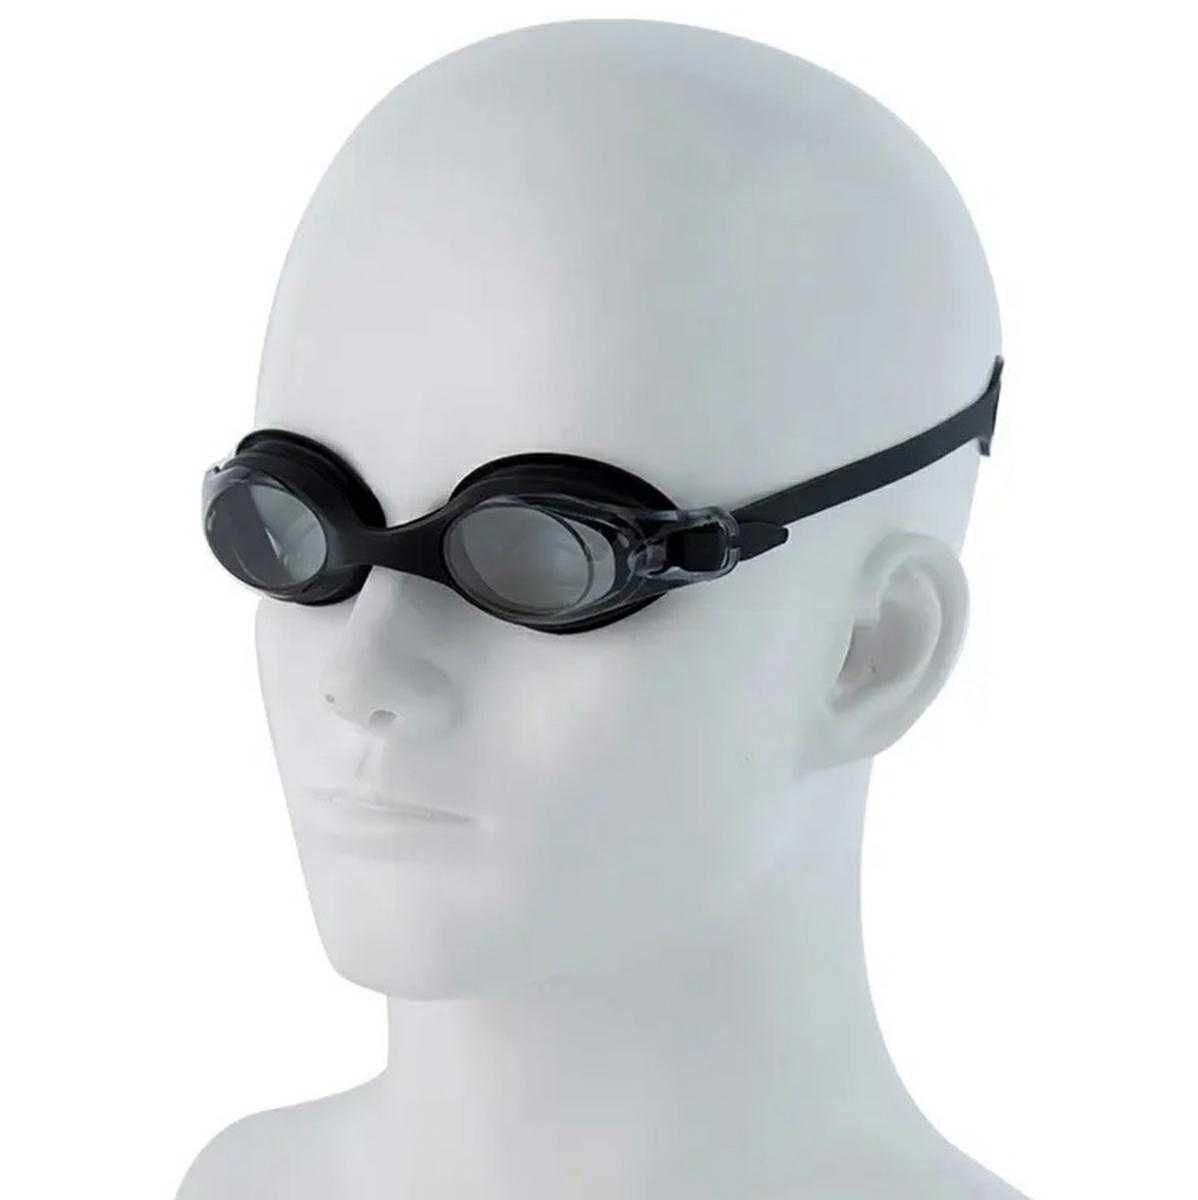 NOWE! Okulary do pływania pływackie ANTIFOG zatyczki nos uszy zestaw